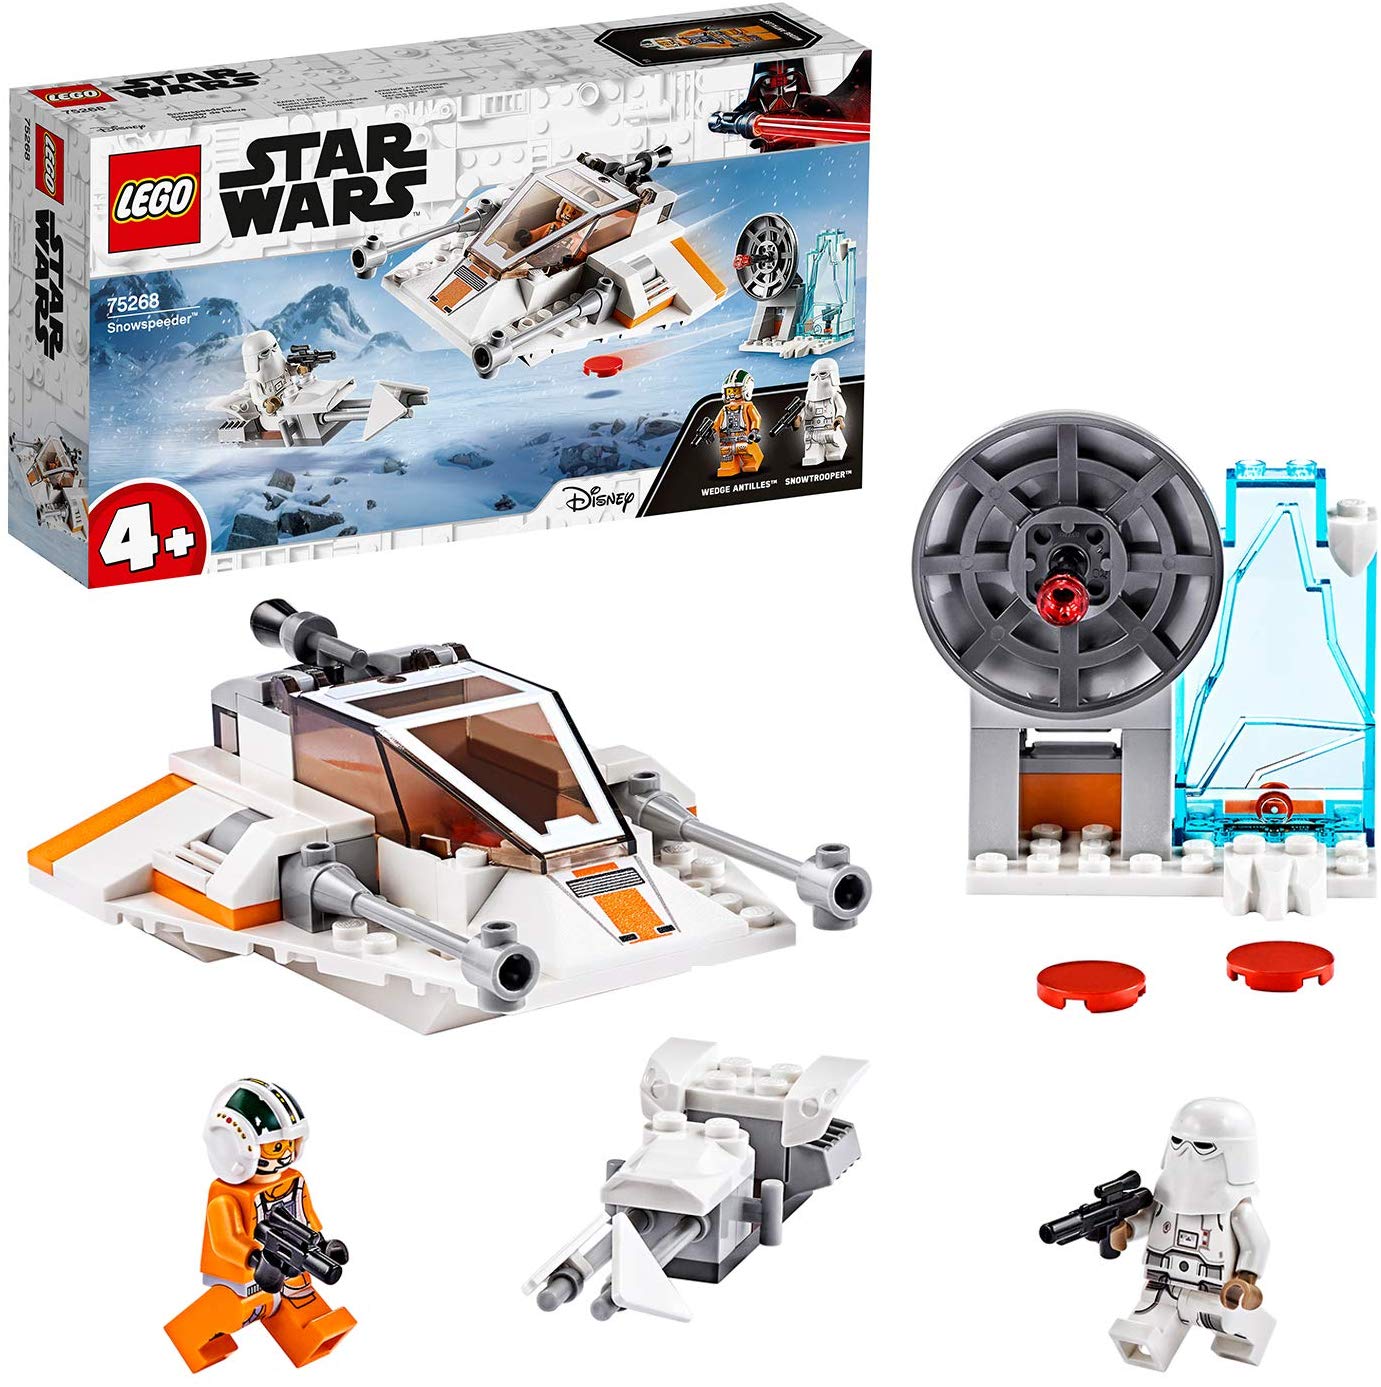 Lego 75268 Snowspeeder, Star Wars, Construction Set